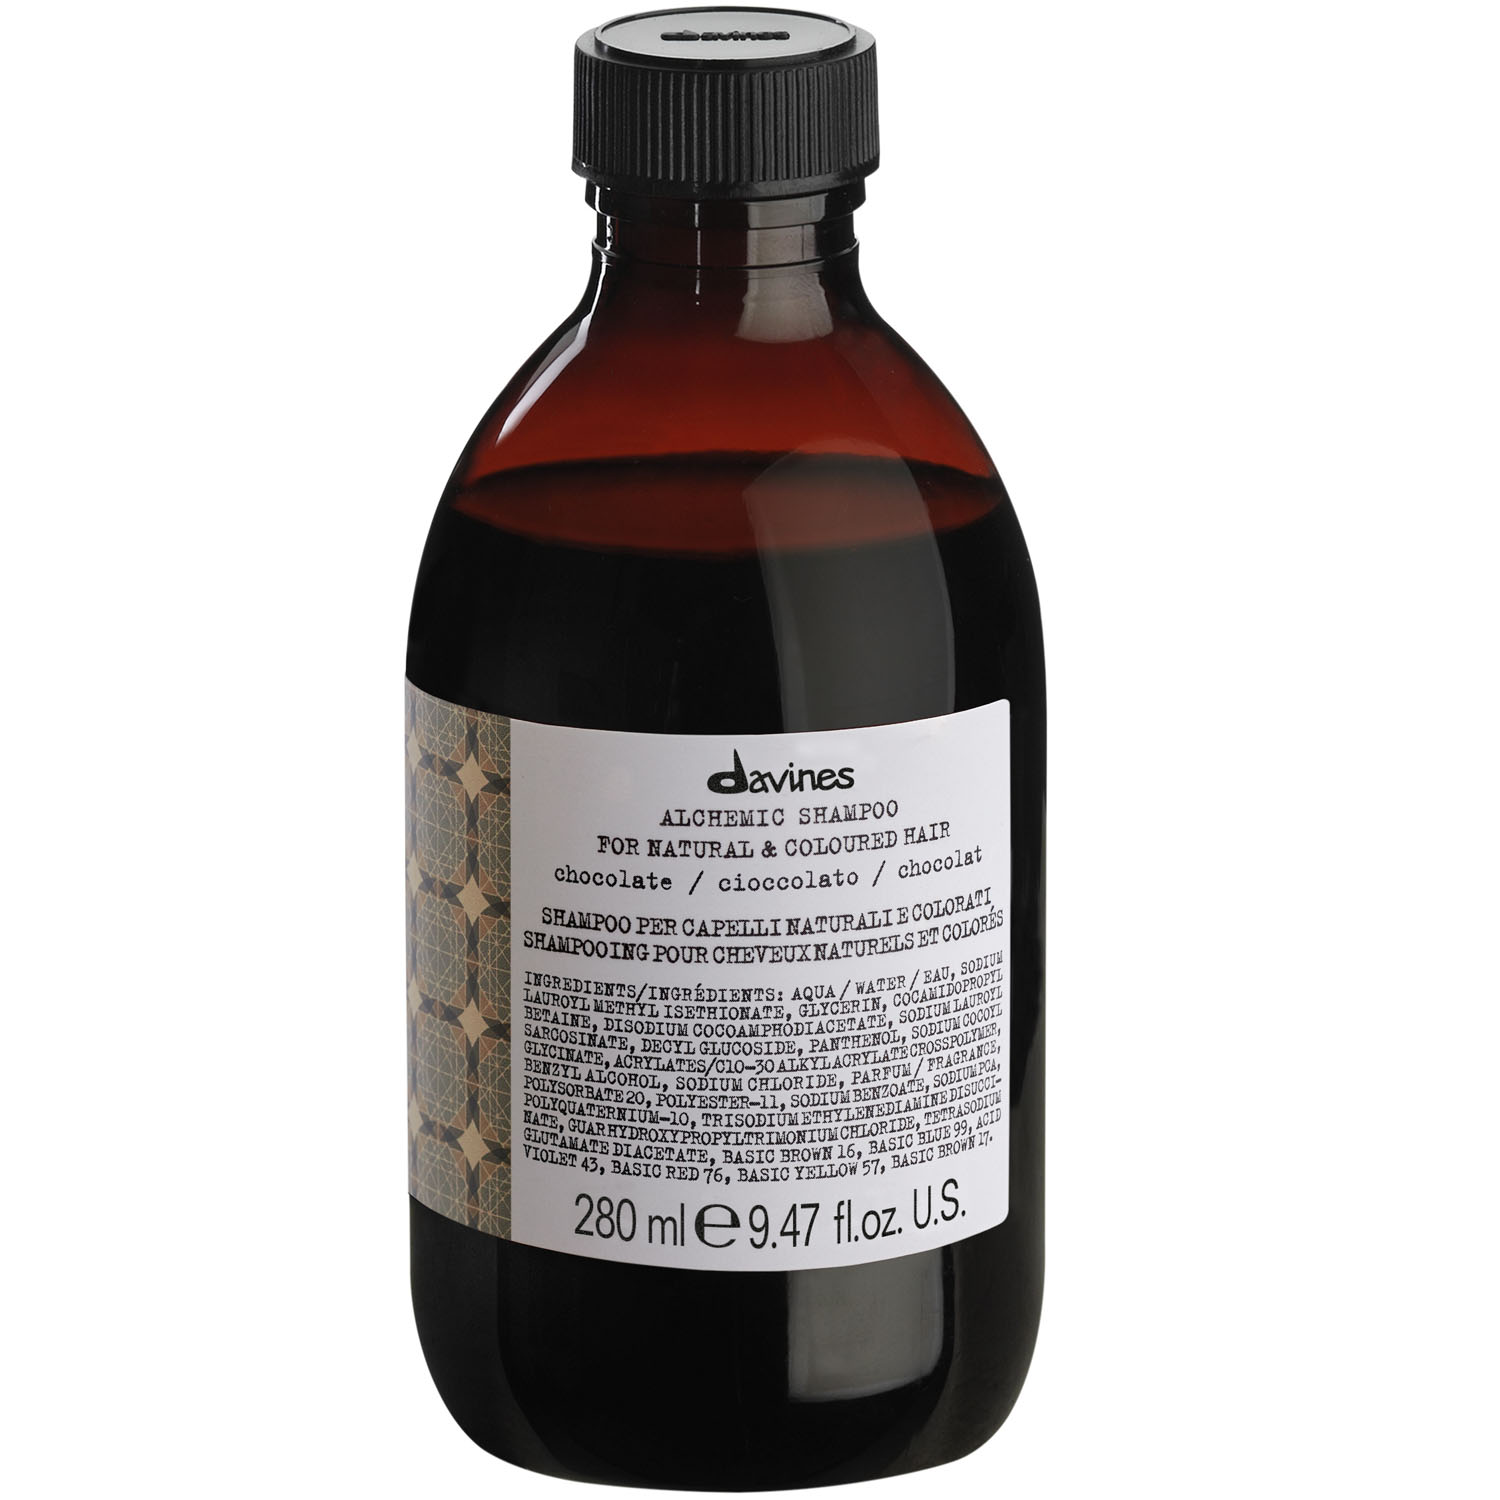 Davines Шампунь для натуральных и окрашенных волос, шоколад, 280 мл (Davines, Alchemic)